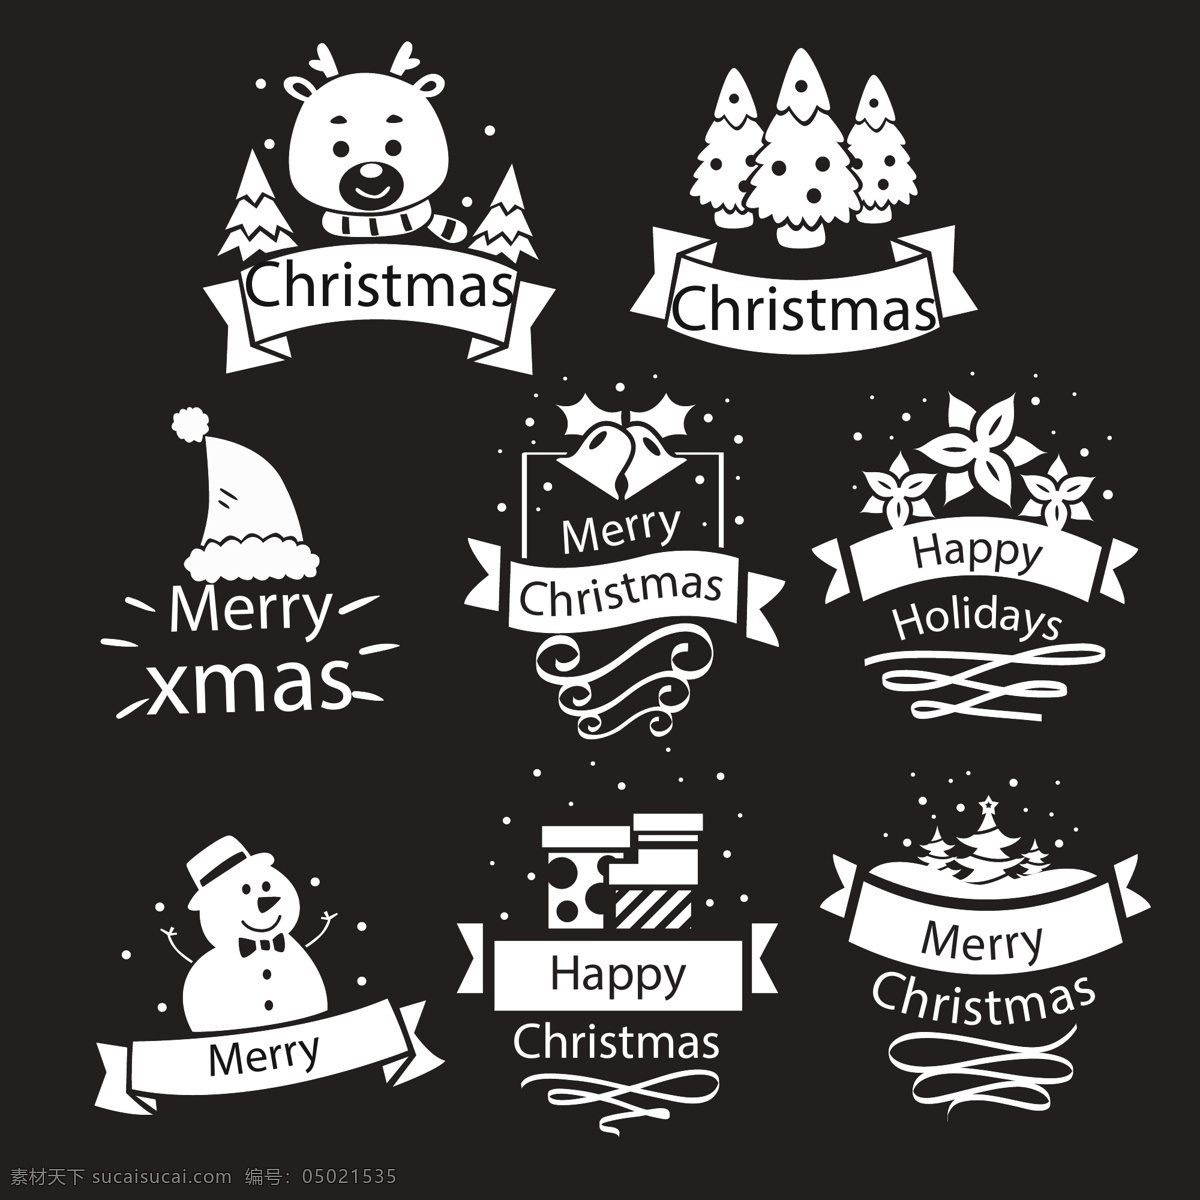 白色 卡通 图案 圣诞 标签 圣诞树 雪花 圣诞节 矢量素材 驯鹿 铃铛 圣诞帽 雪人 英文